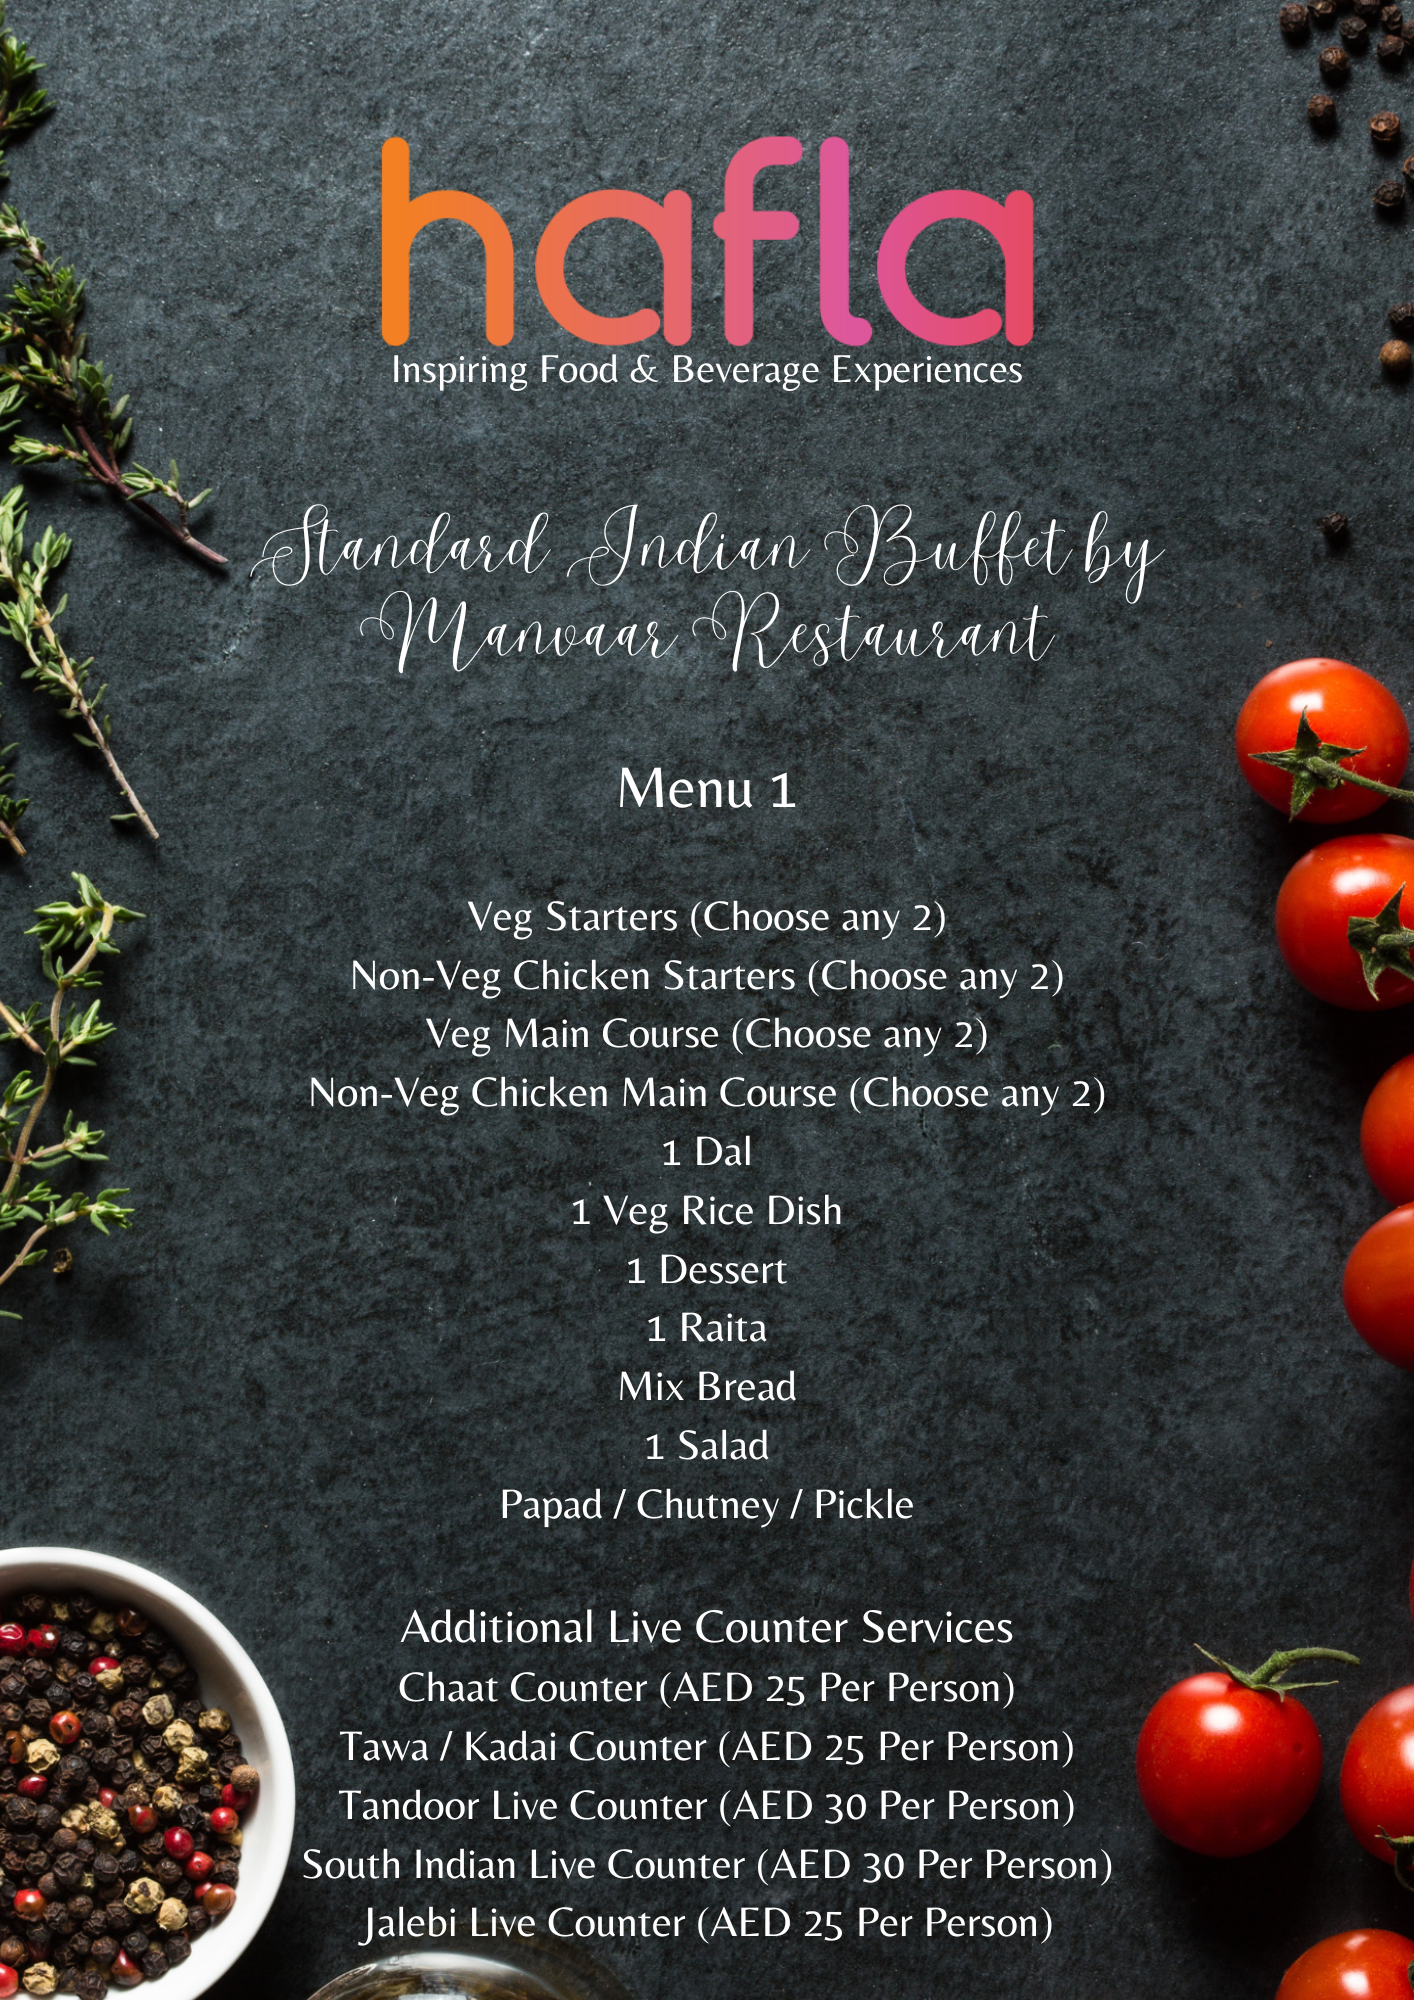 Standard Indian Buffet by Manvaar Restaurant